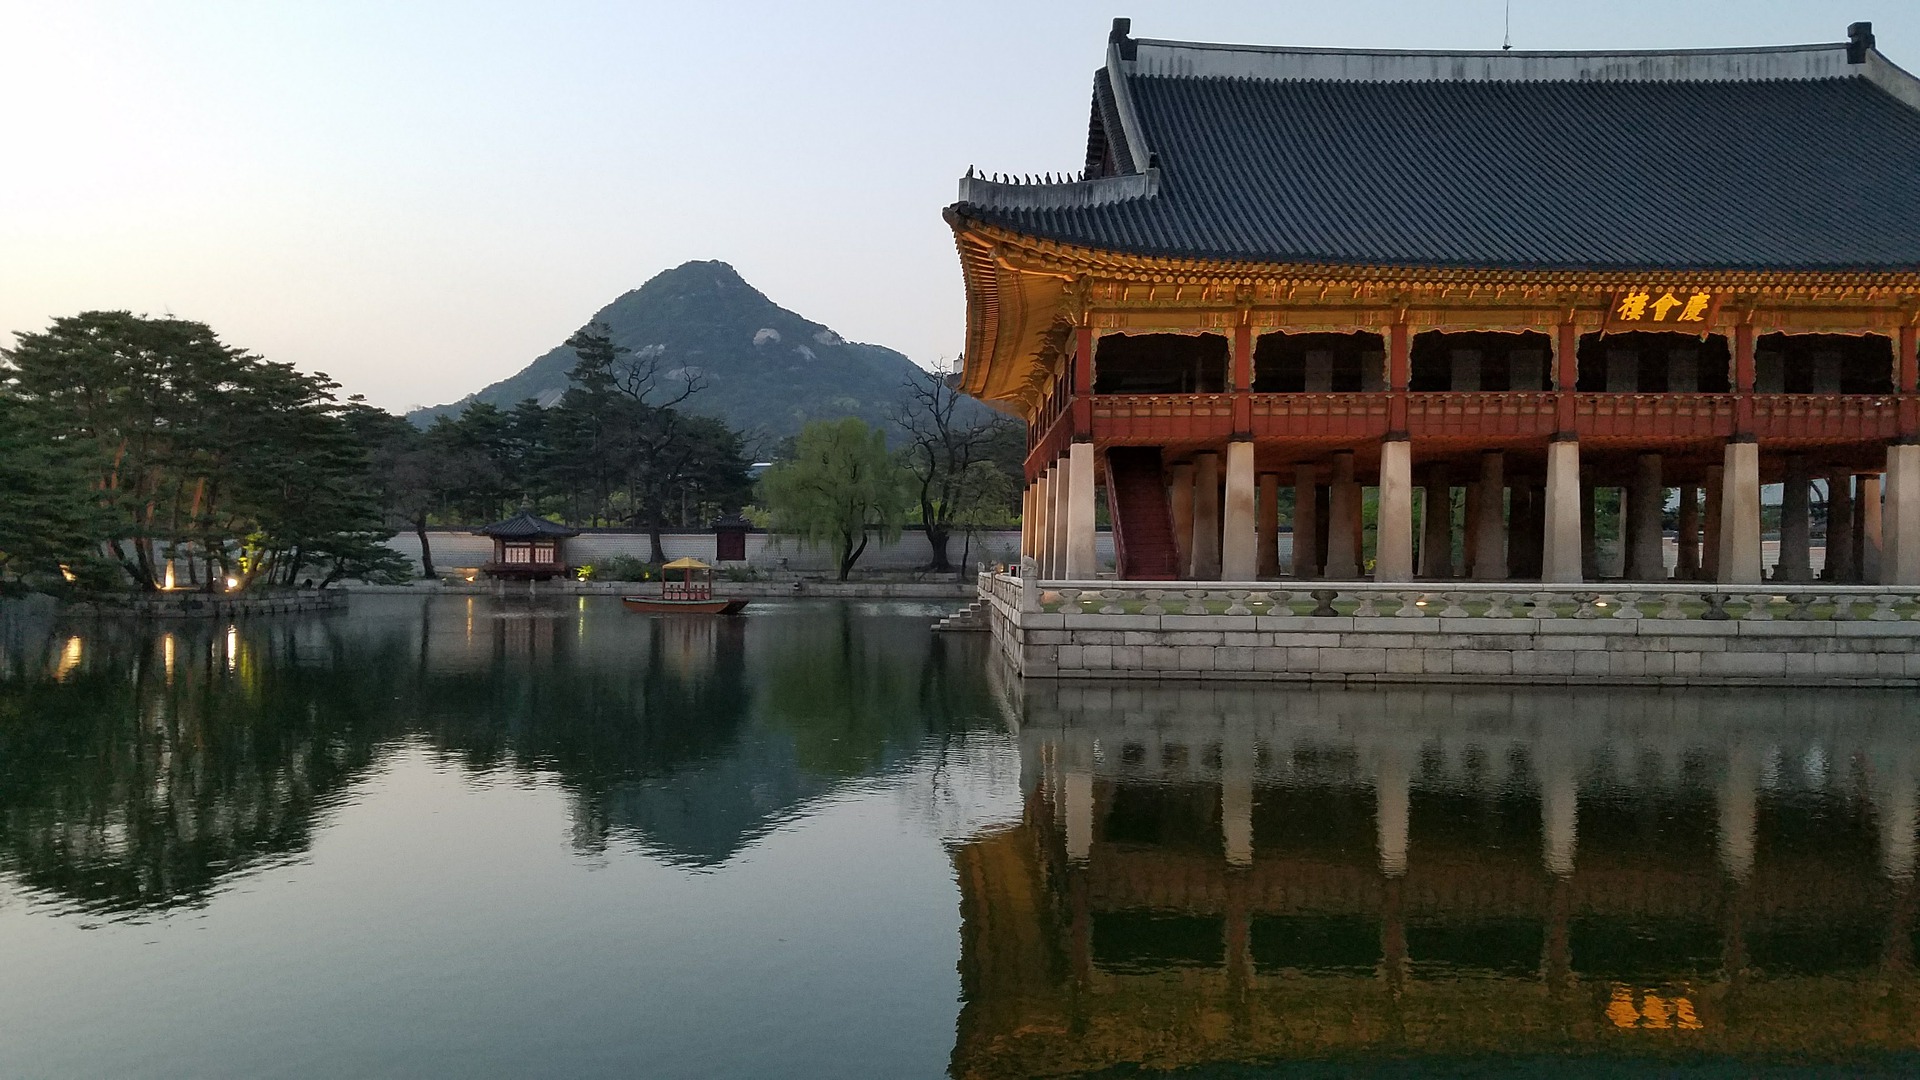 Сеул, Корея